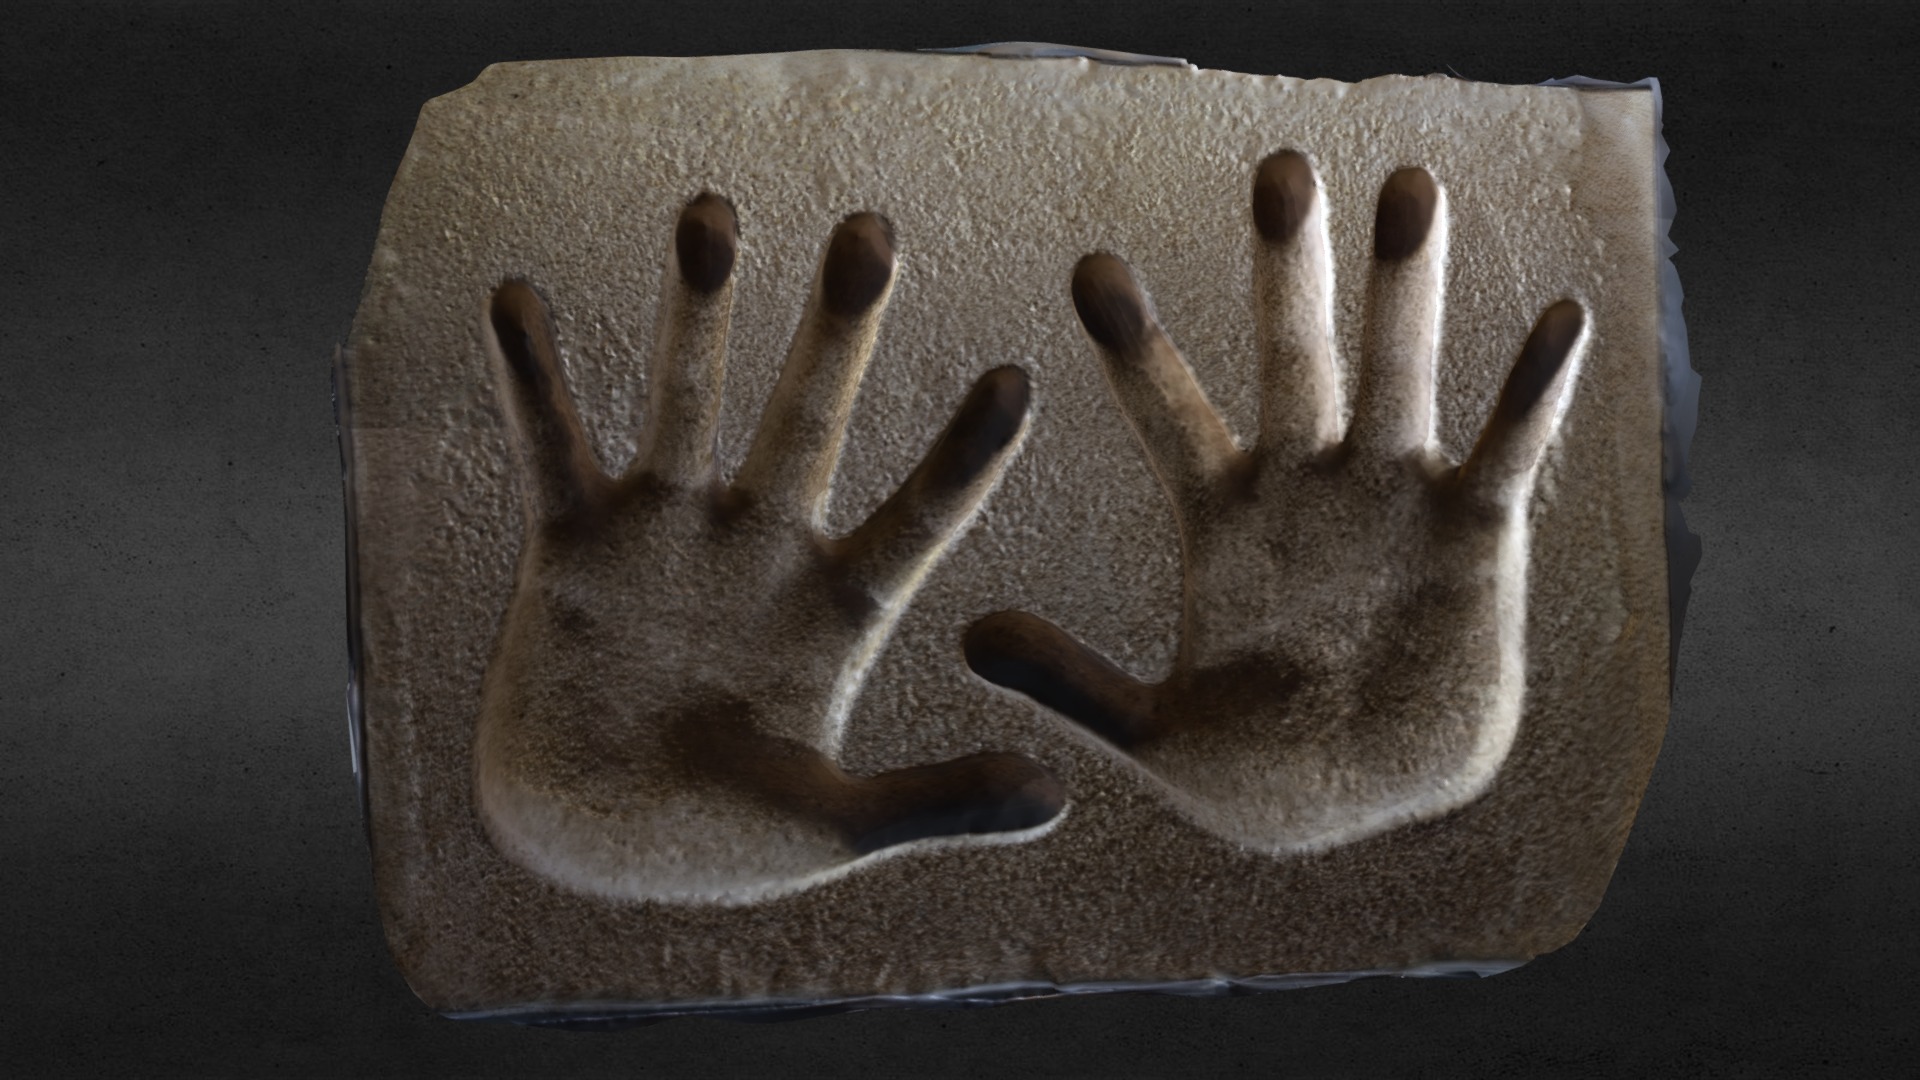 3D model Sammo Hung (洪金寶) – Hands Print - This is a 3D model of the Sammo Hung (洪金寶) - Hands Print. The 3D model is about a hand made out of wood.